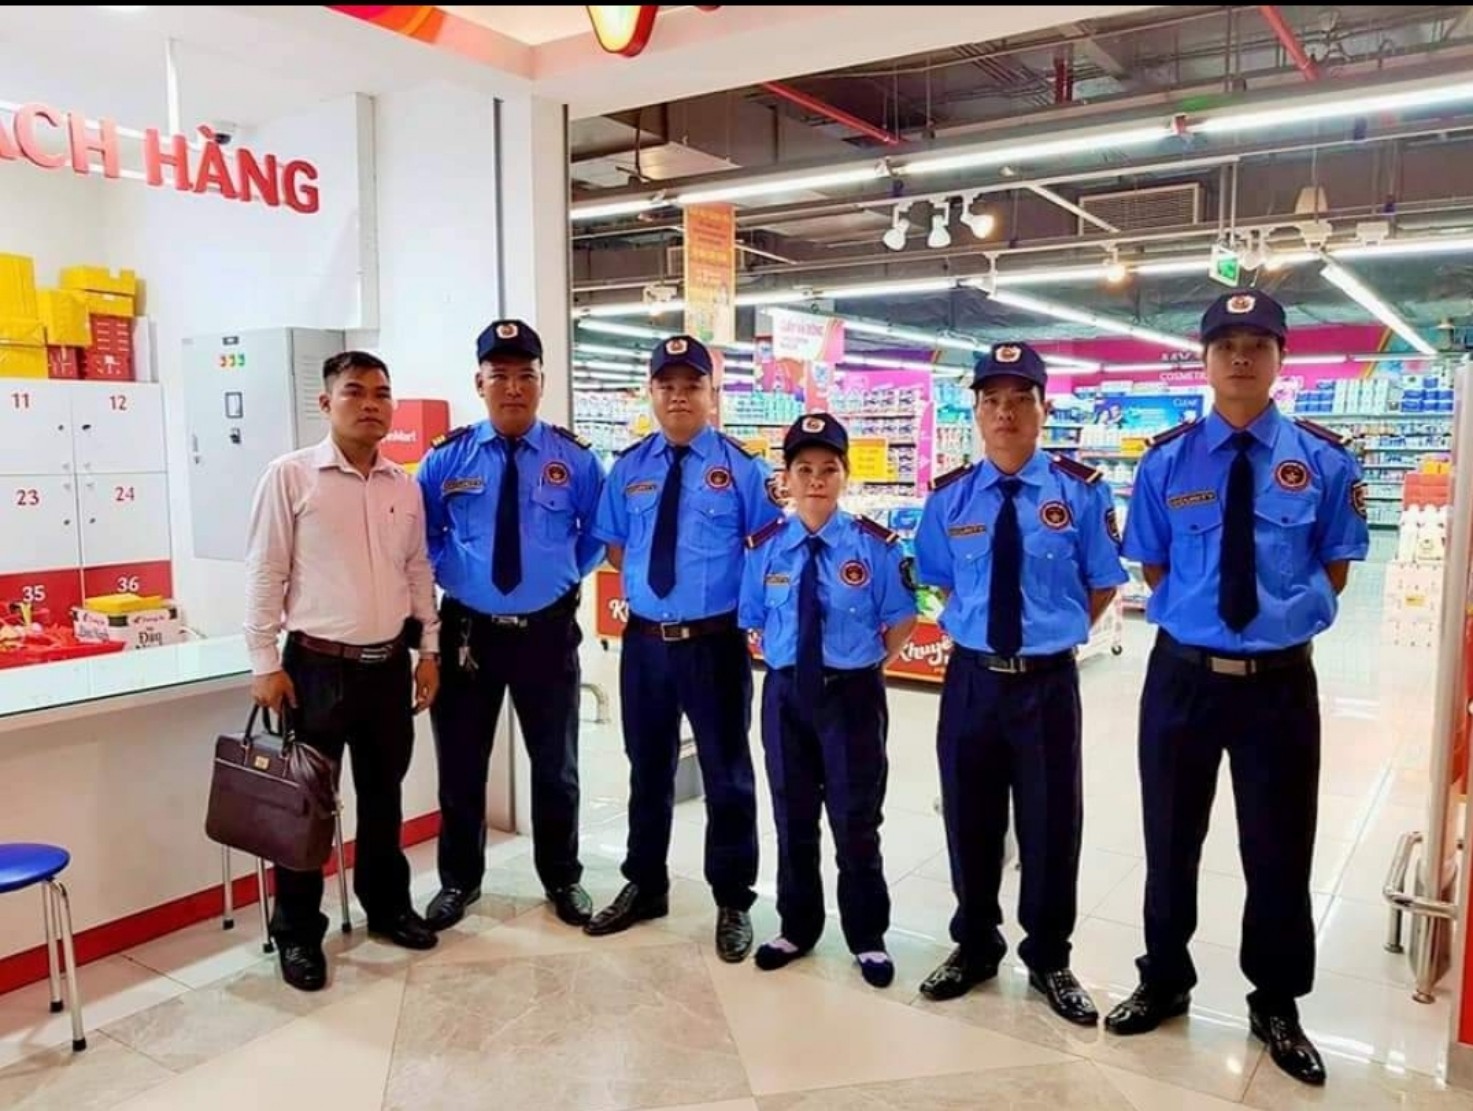 Dịch vụ bảo vệ yếu nhân (VIP) uy tín, chuyên nghiệp tại Đà Nẵng